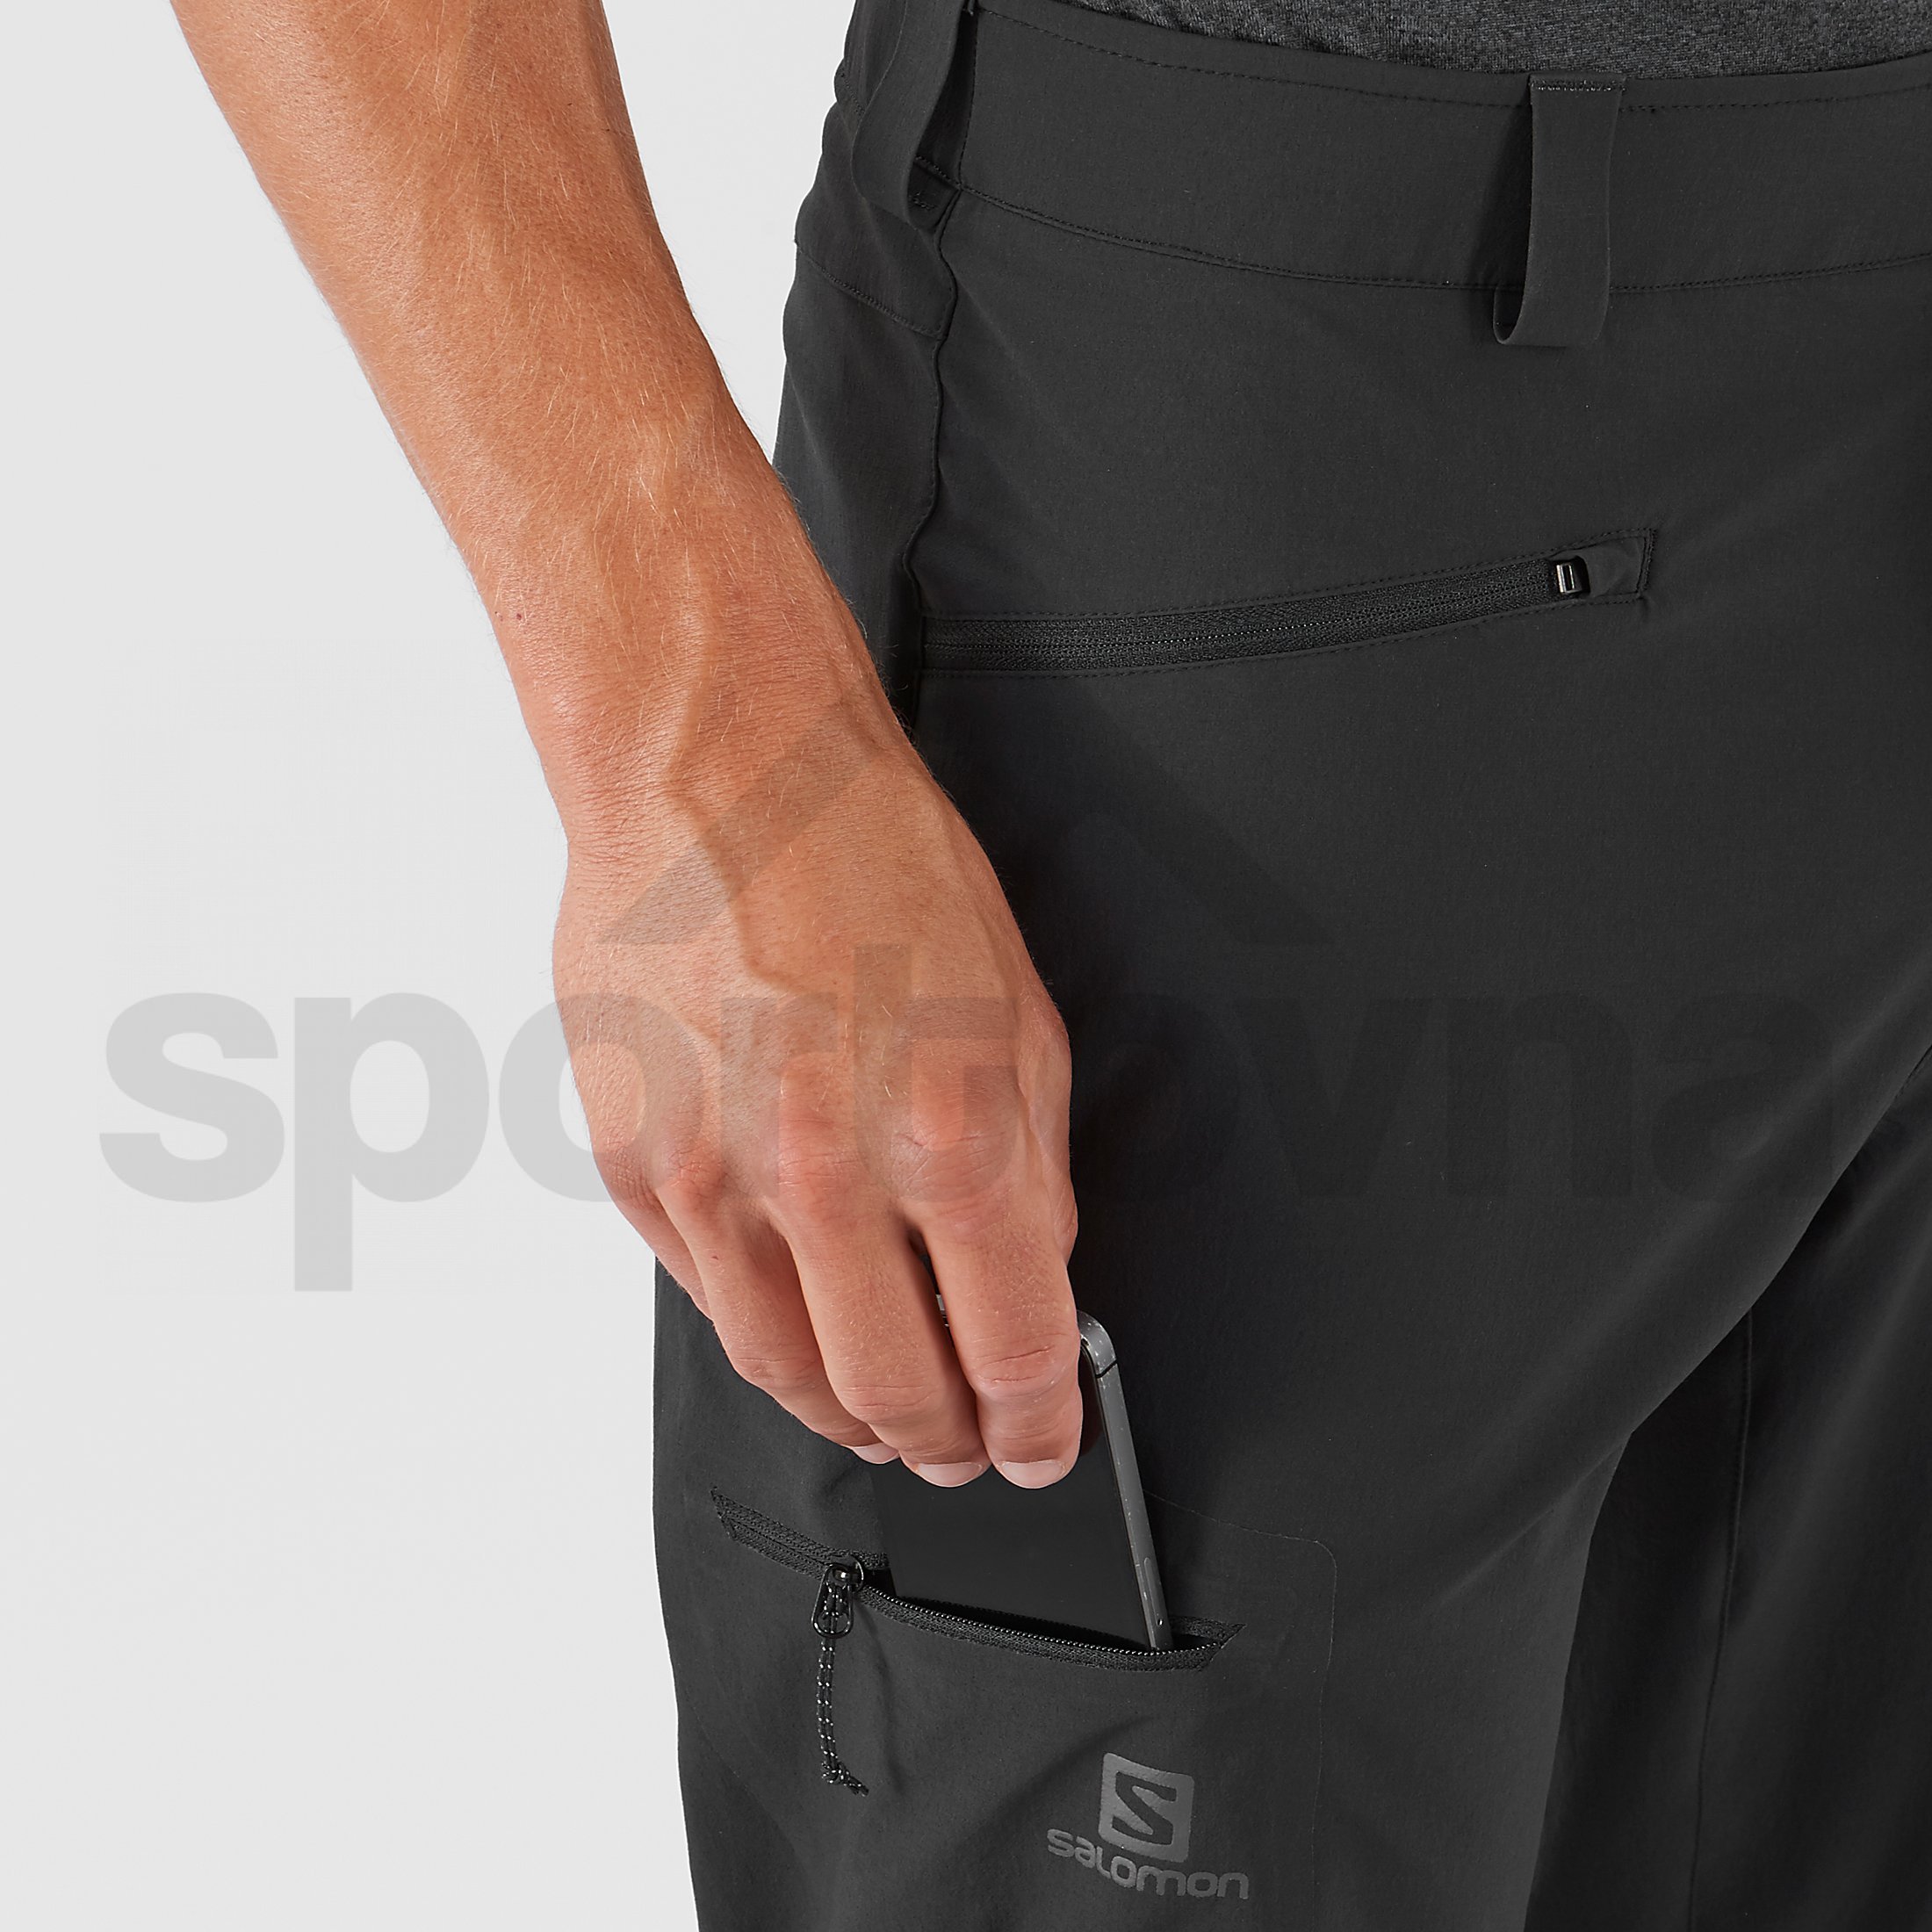 Kalhoty Salomon Wayfarer Straight Pant M - černá (prodloužená délka)